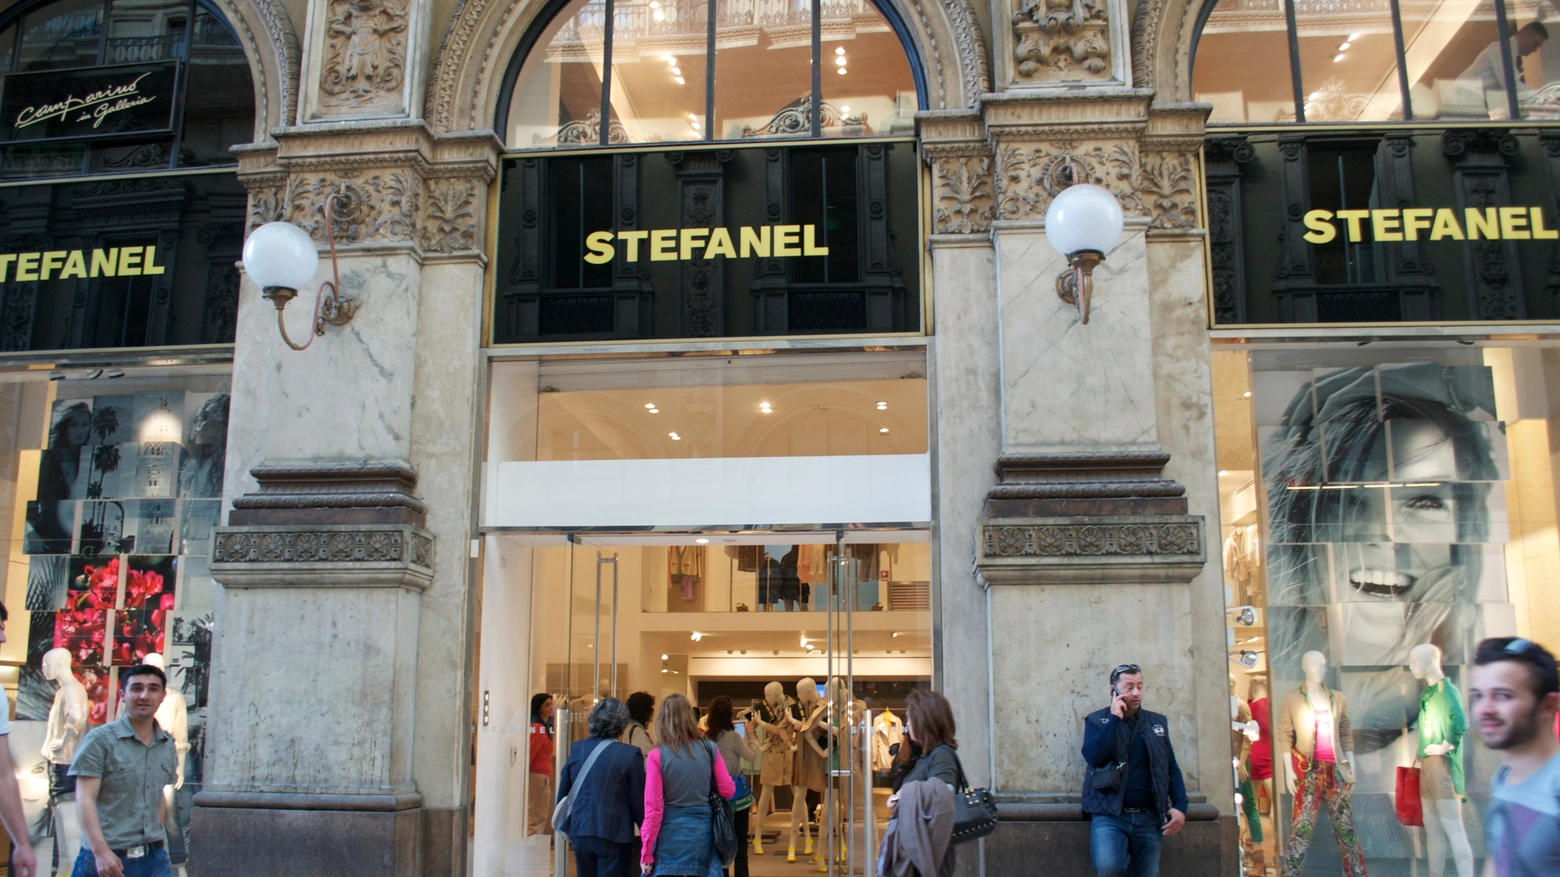 Negozio Stefanel in Galleria Vittorio Emanuele